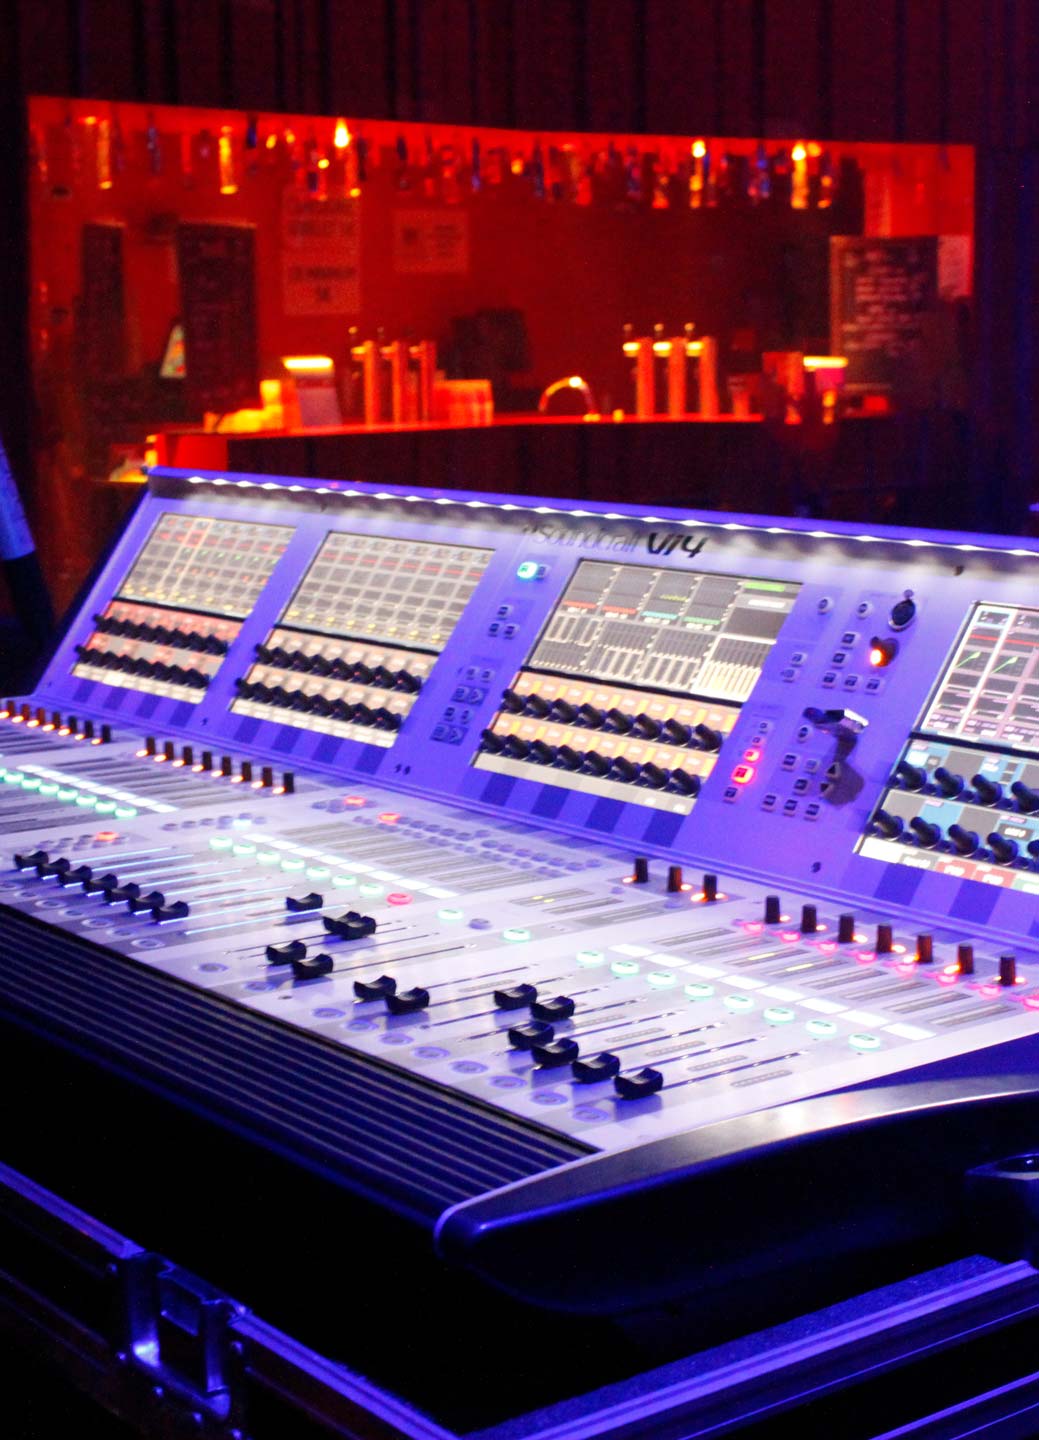 An illuminated sound board.